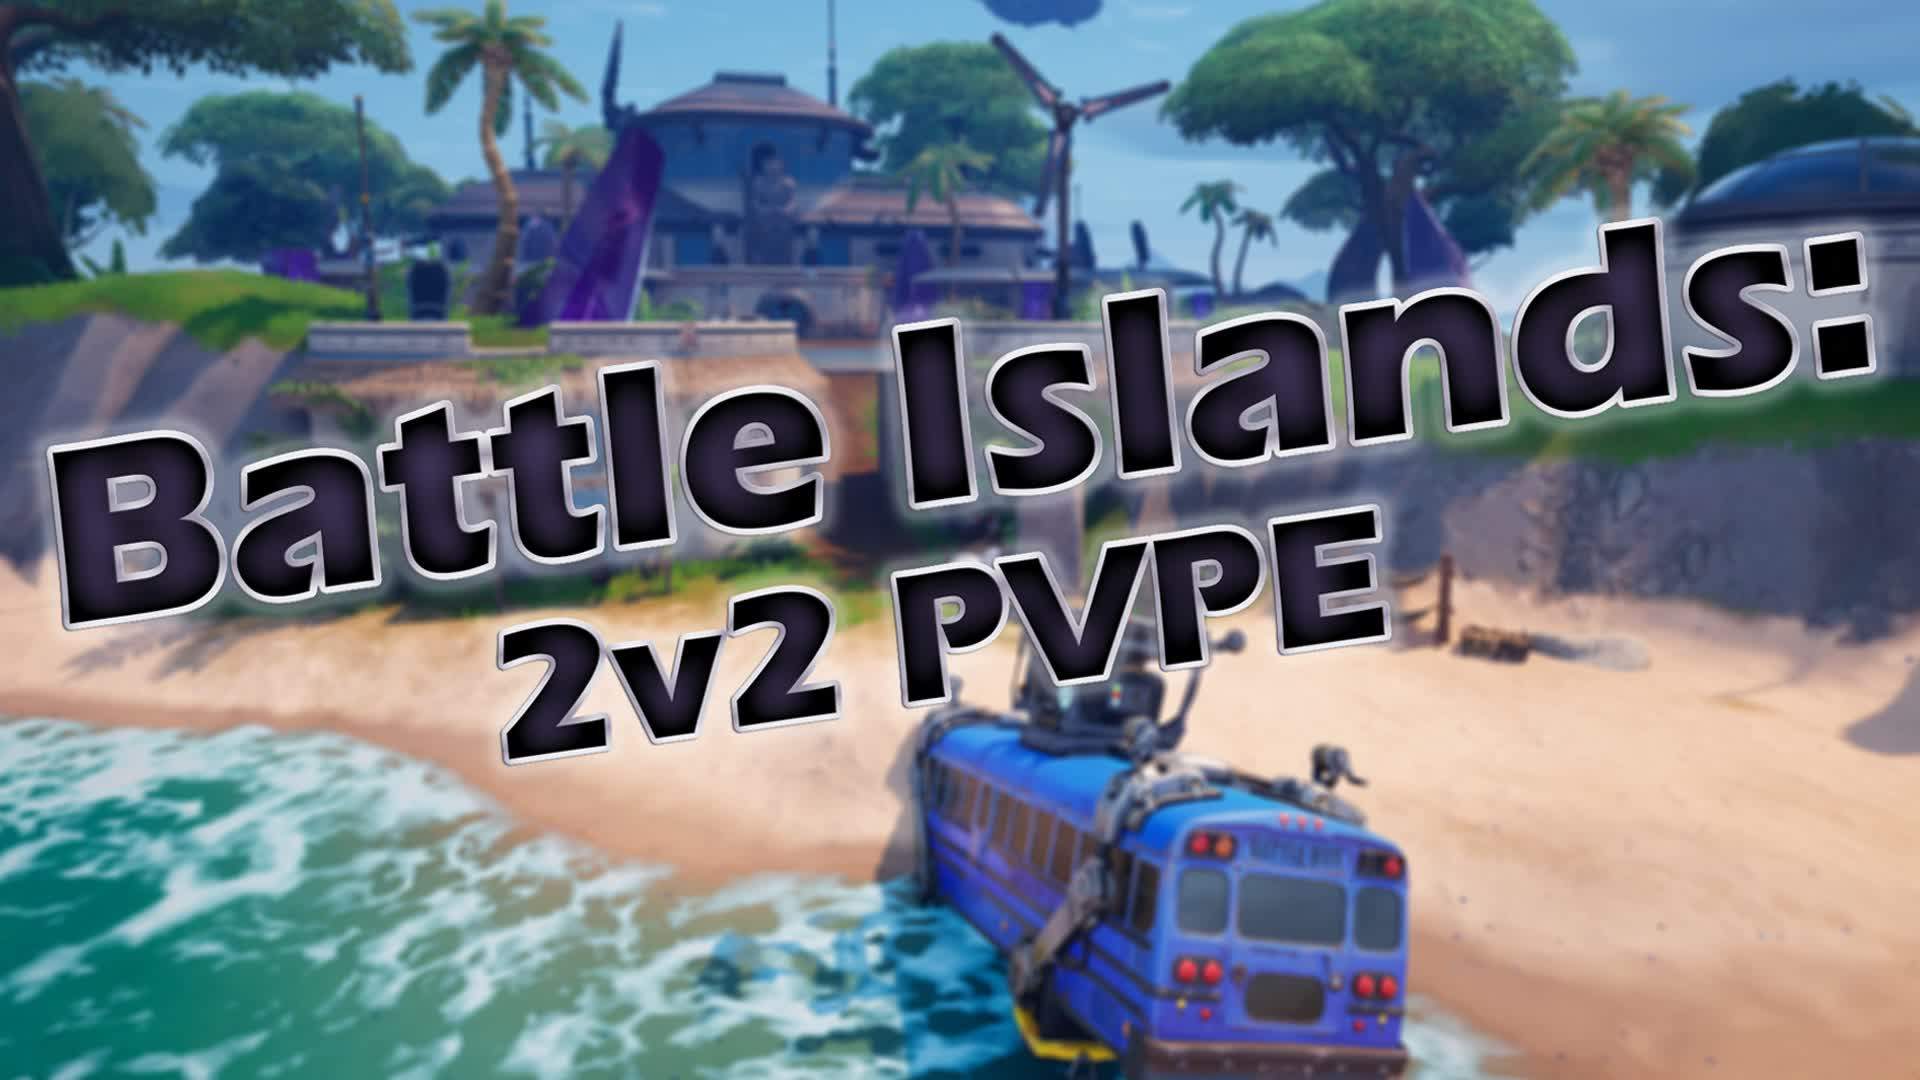 Battle Islands: 2v2 PVPE